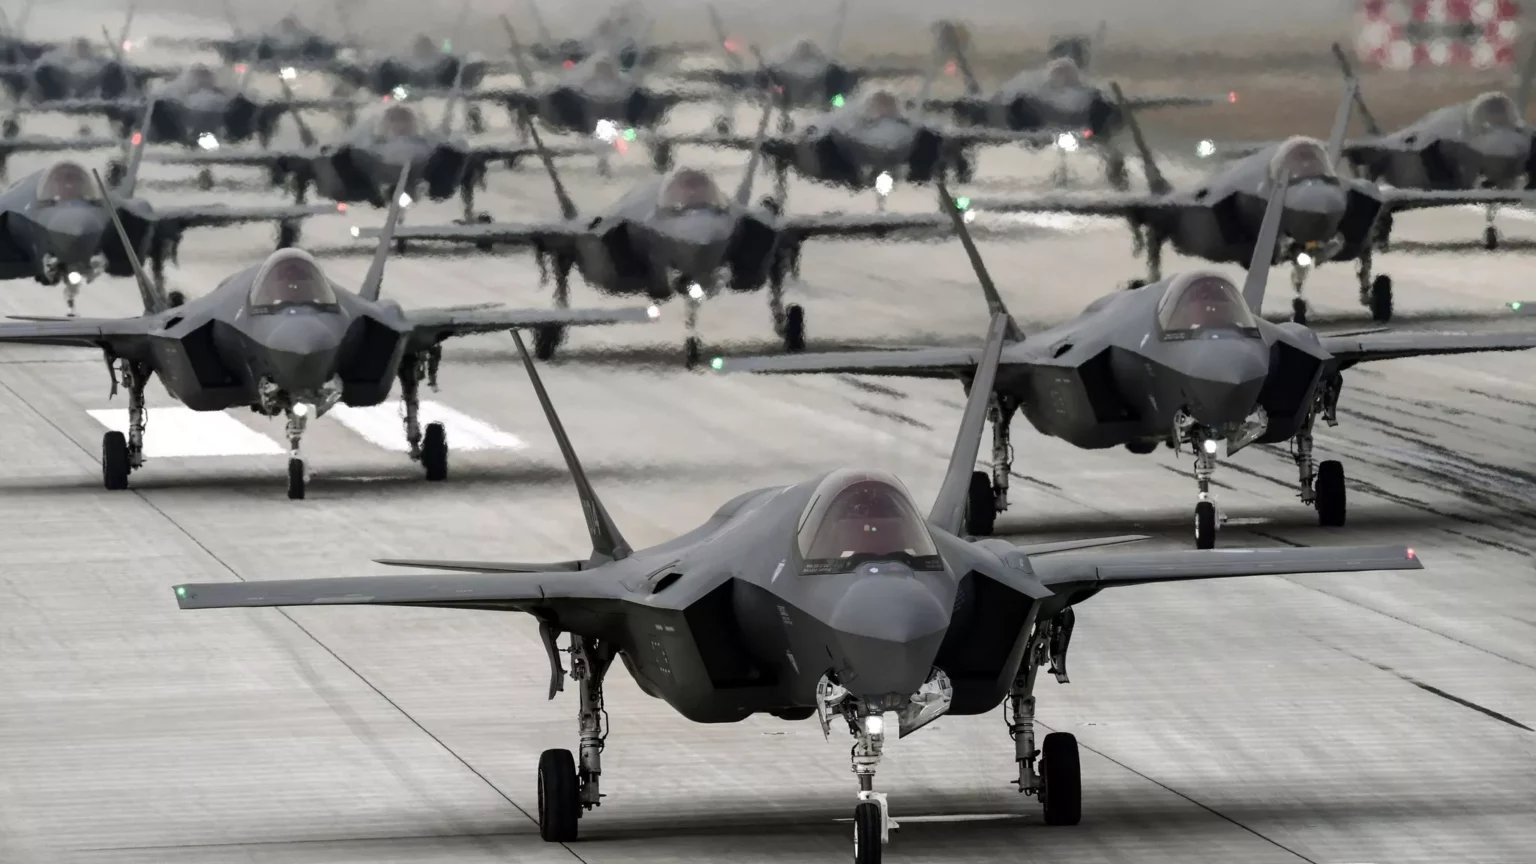 south-korea-to-send-military-aircraft-to-evacuate-south-korean-nationals